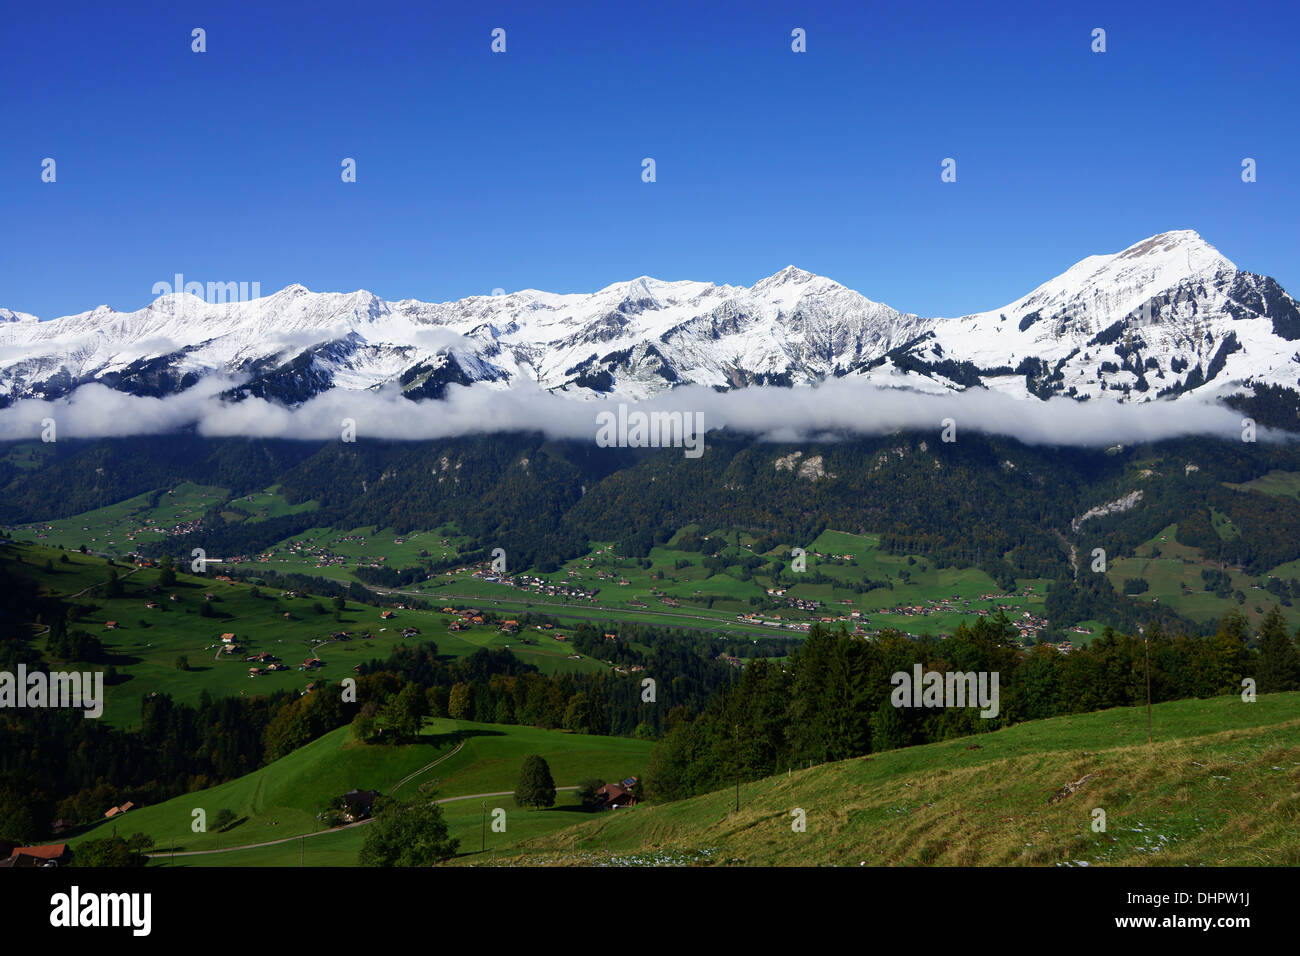 Kandertal, Mt. Niesen (r), Reichenbach,, Bernese alps, Switzerland Stock Photo